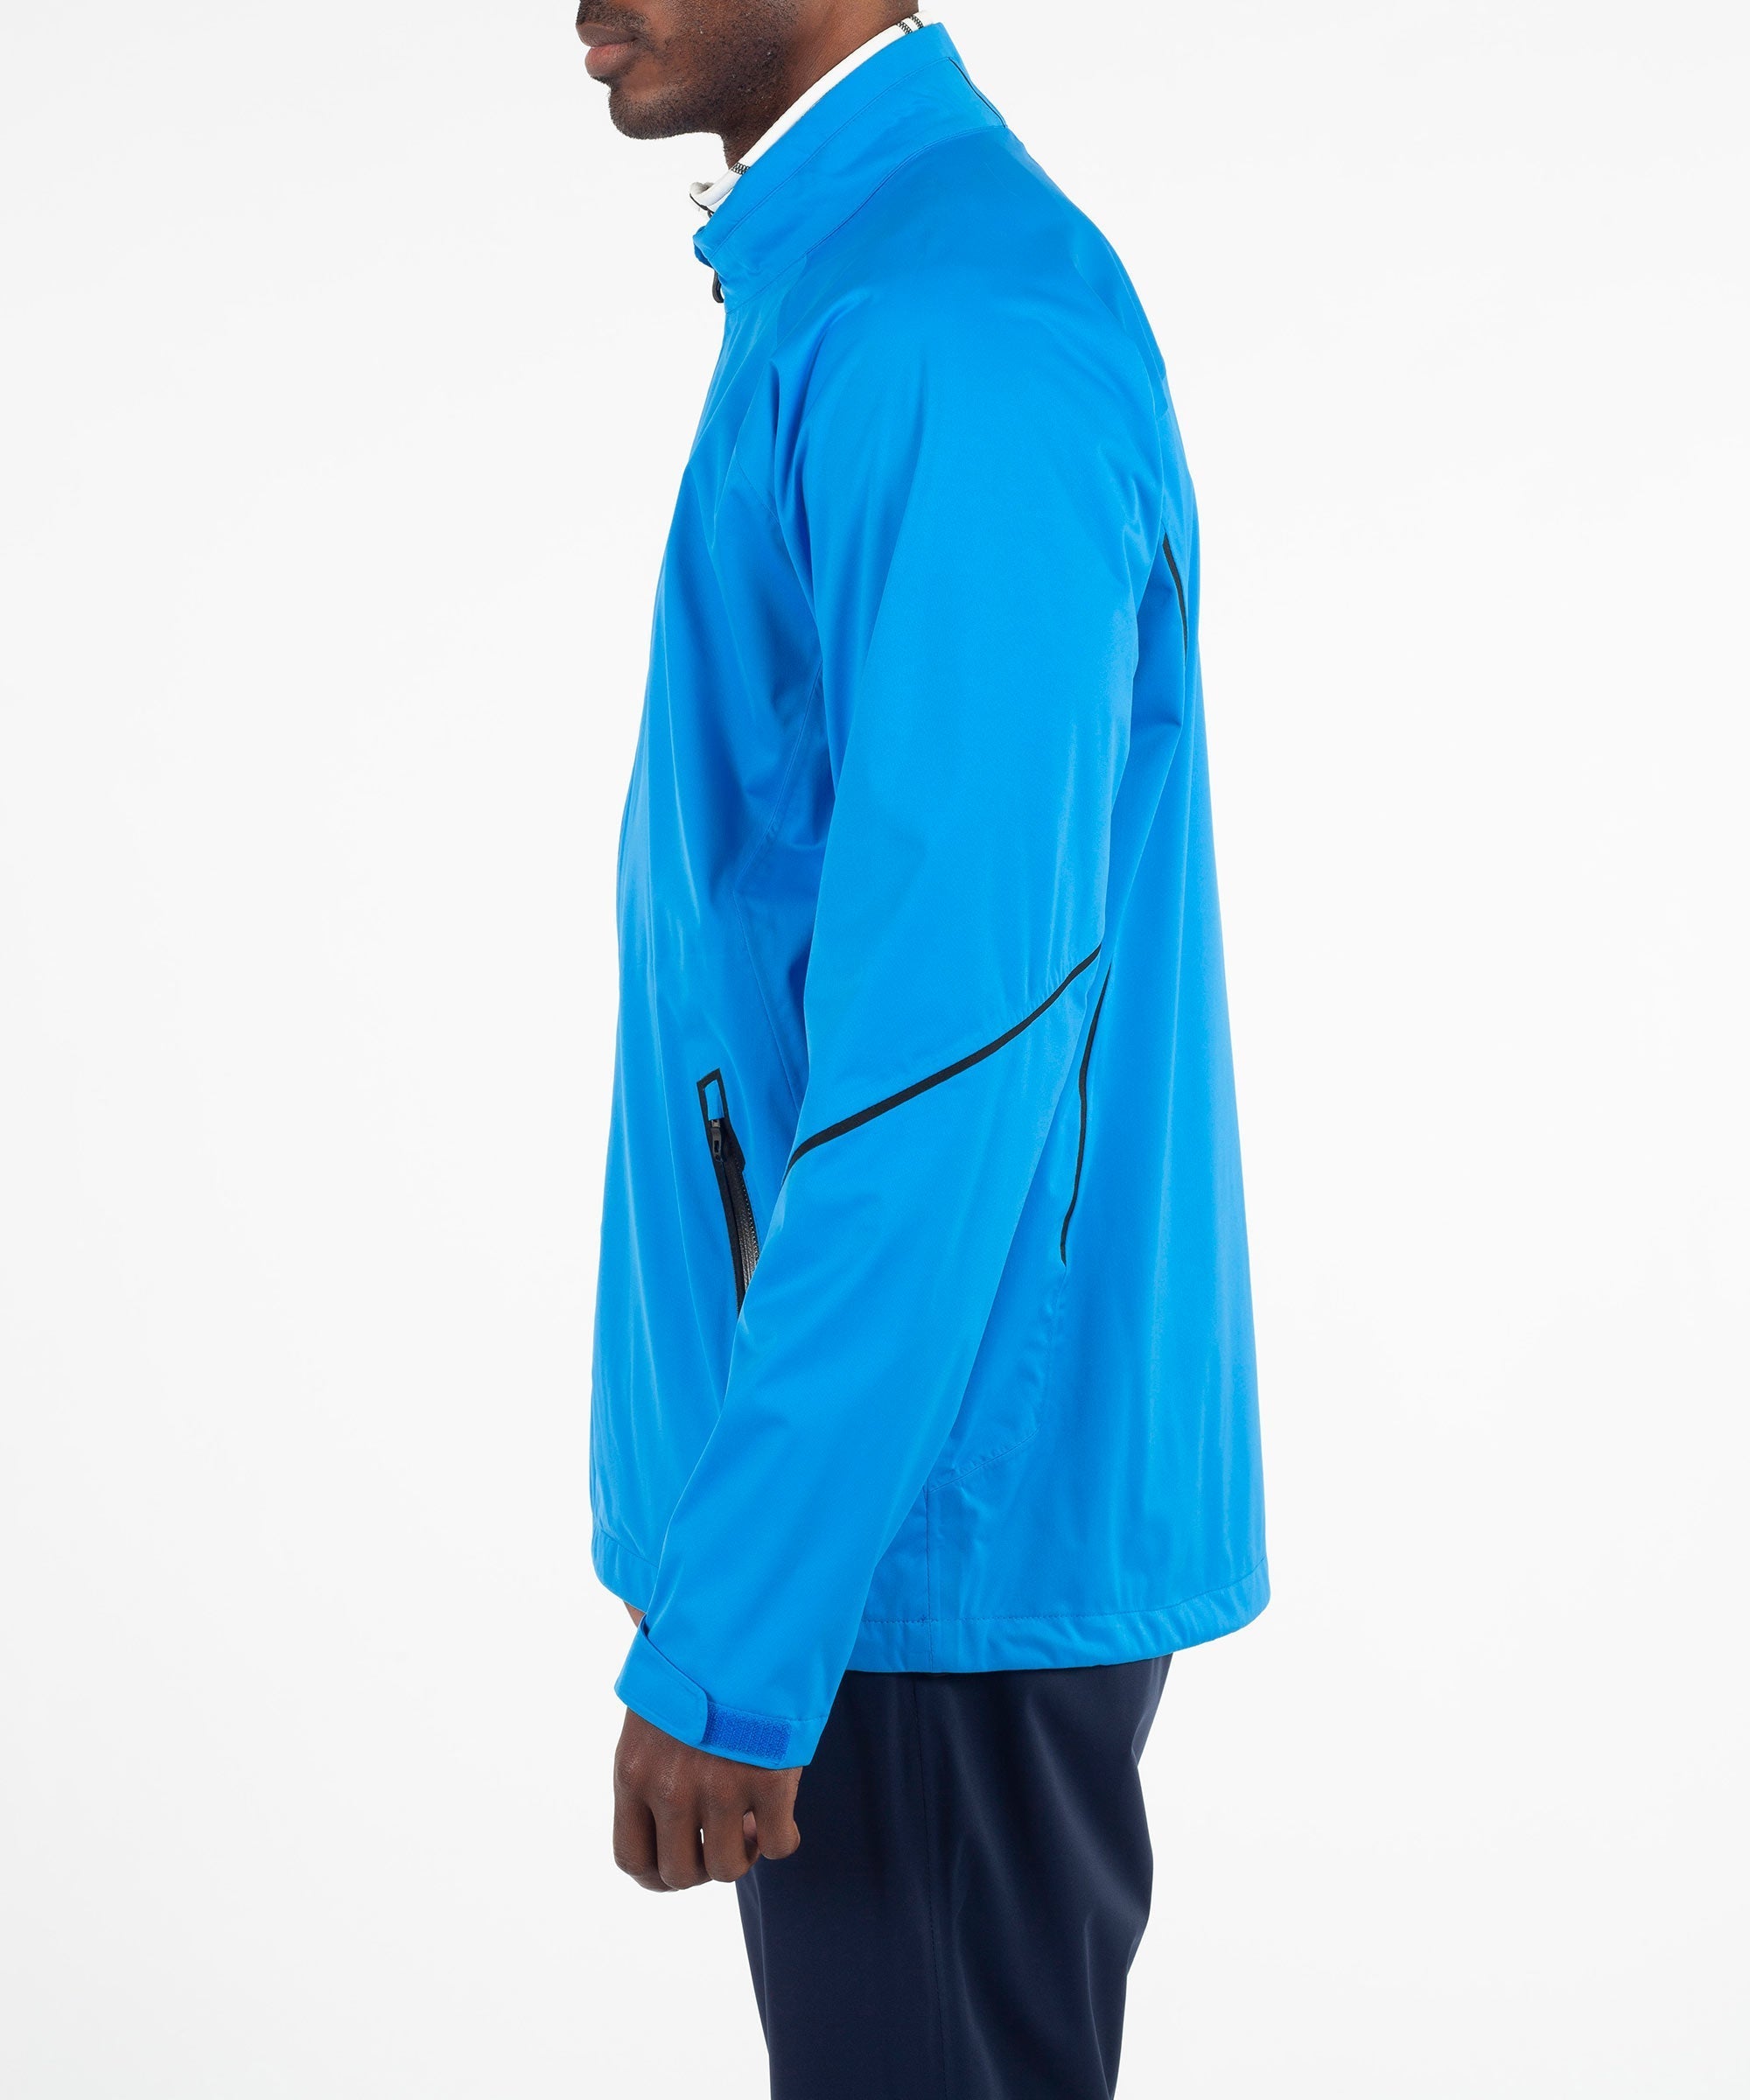 Men's Jay Zephal FlexTech Waterproof Ultra-Stretch Jacket - Sunice